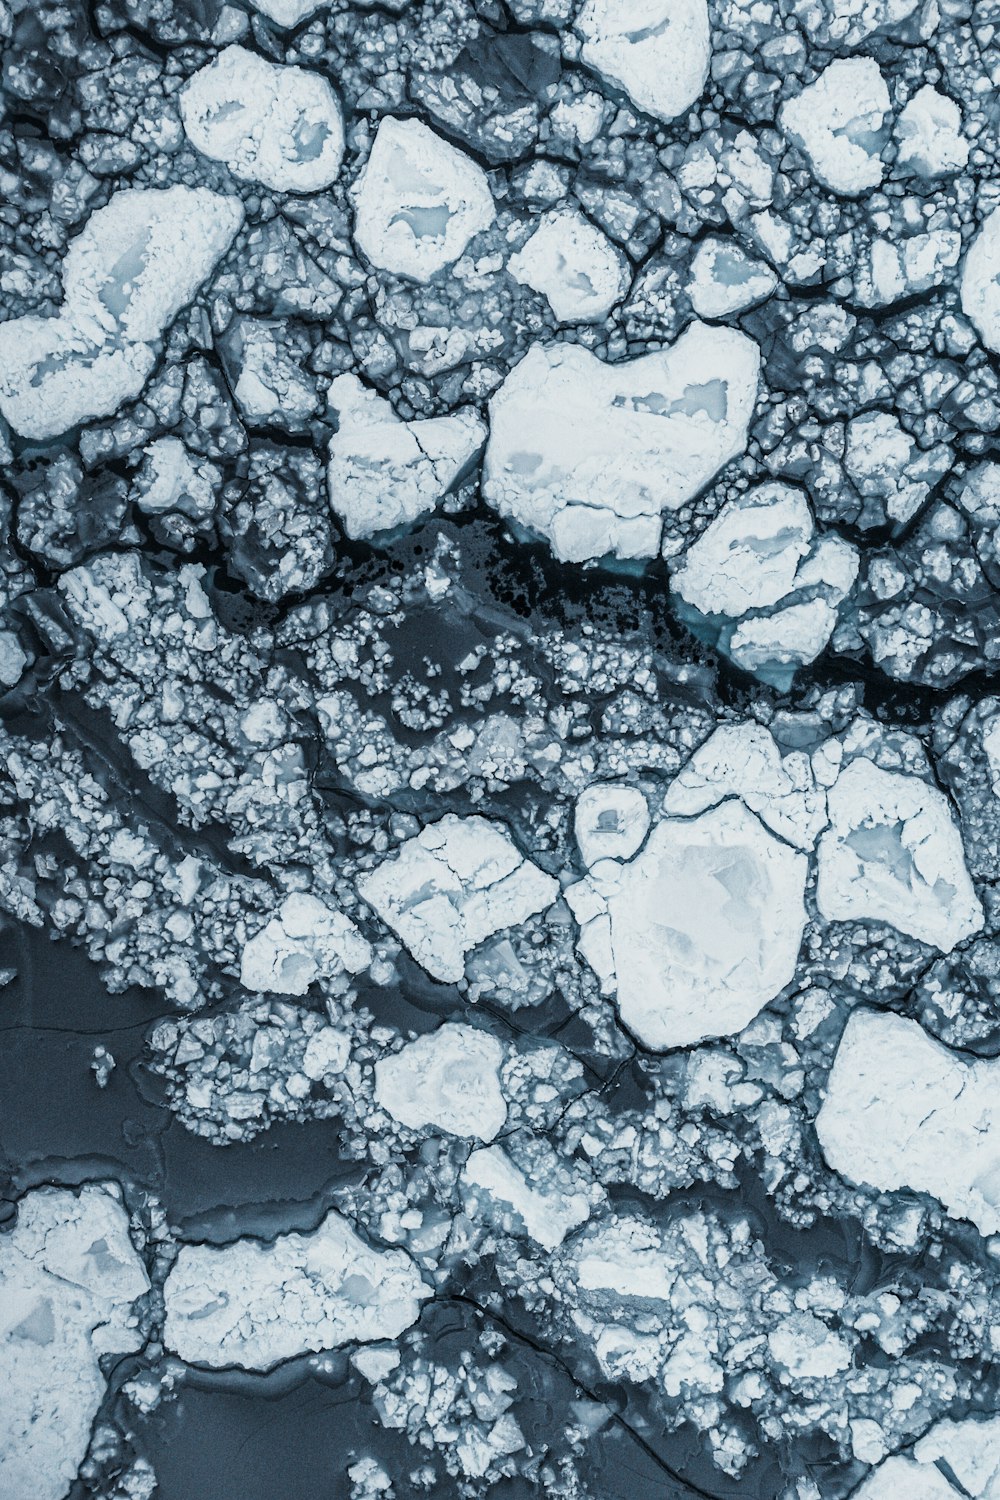 Luftaufnahme von Eisschollen, die im Wasser schwimmen